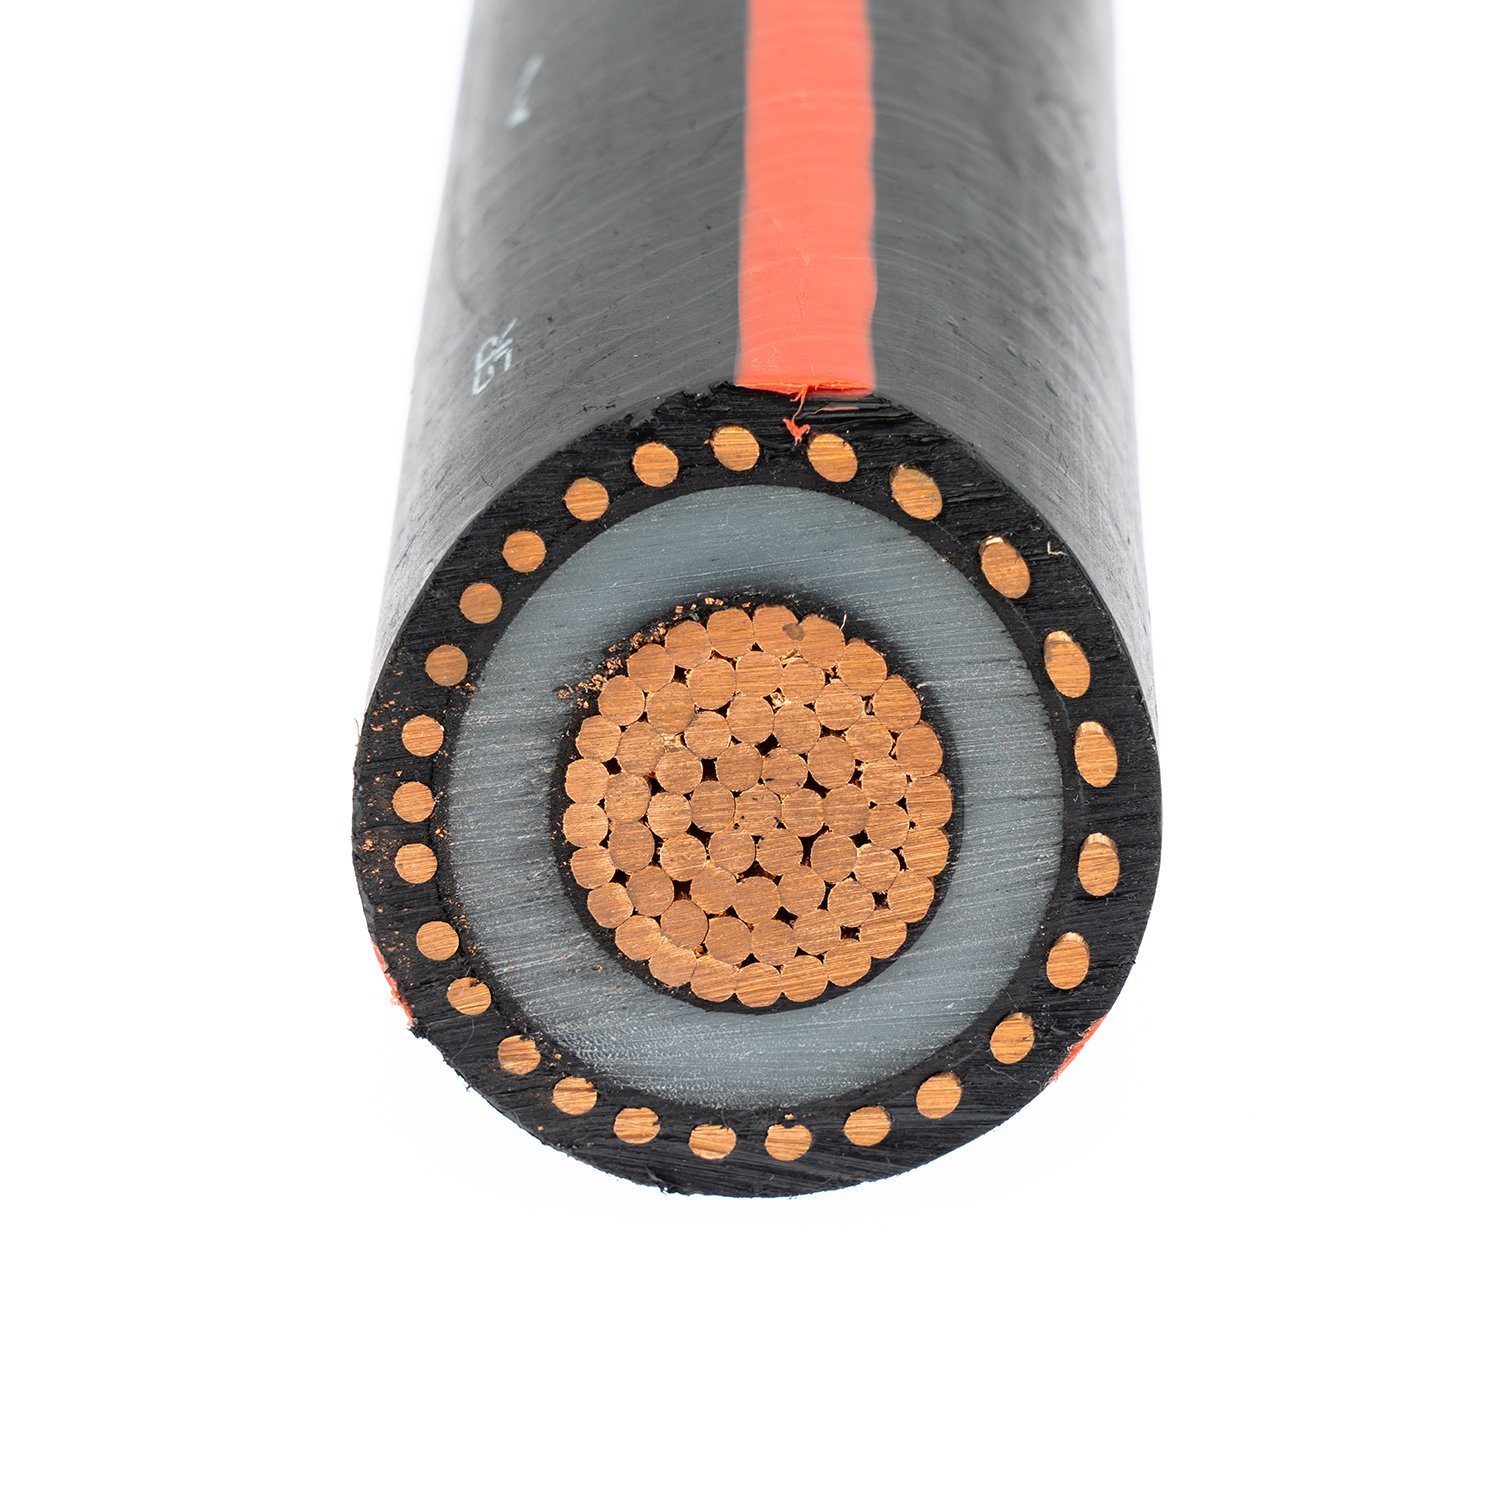 
                Мв90 Mv105 подземный кабель ДТП UL cUL перечисленных 5кв, 15 кв, 25 кв 1/0 AWG 4/0AWG медных или Аль-проводниковый Tr-XLPE короткого замыкания нейтральный провод LLDPE стопор оболочки троса
            